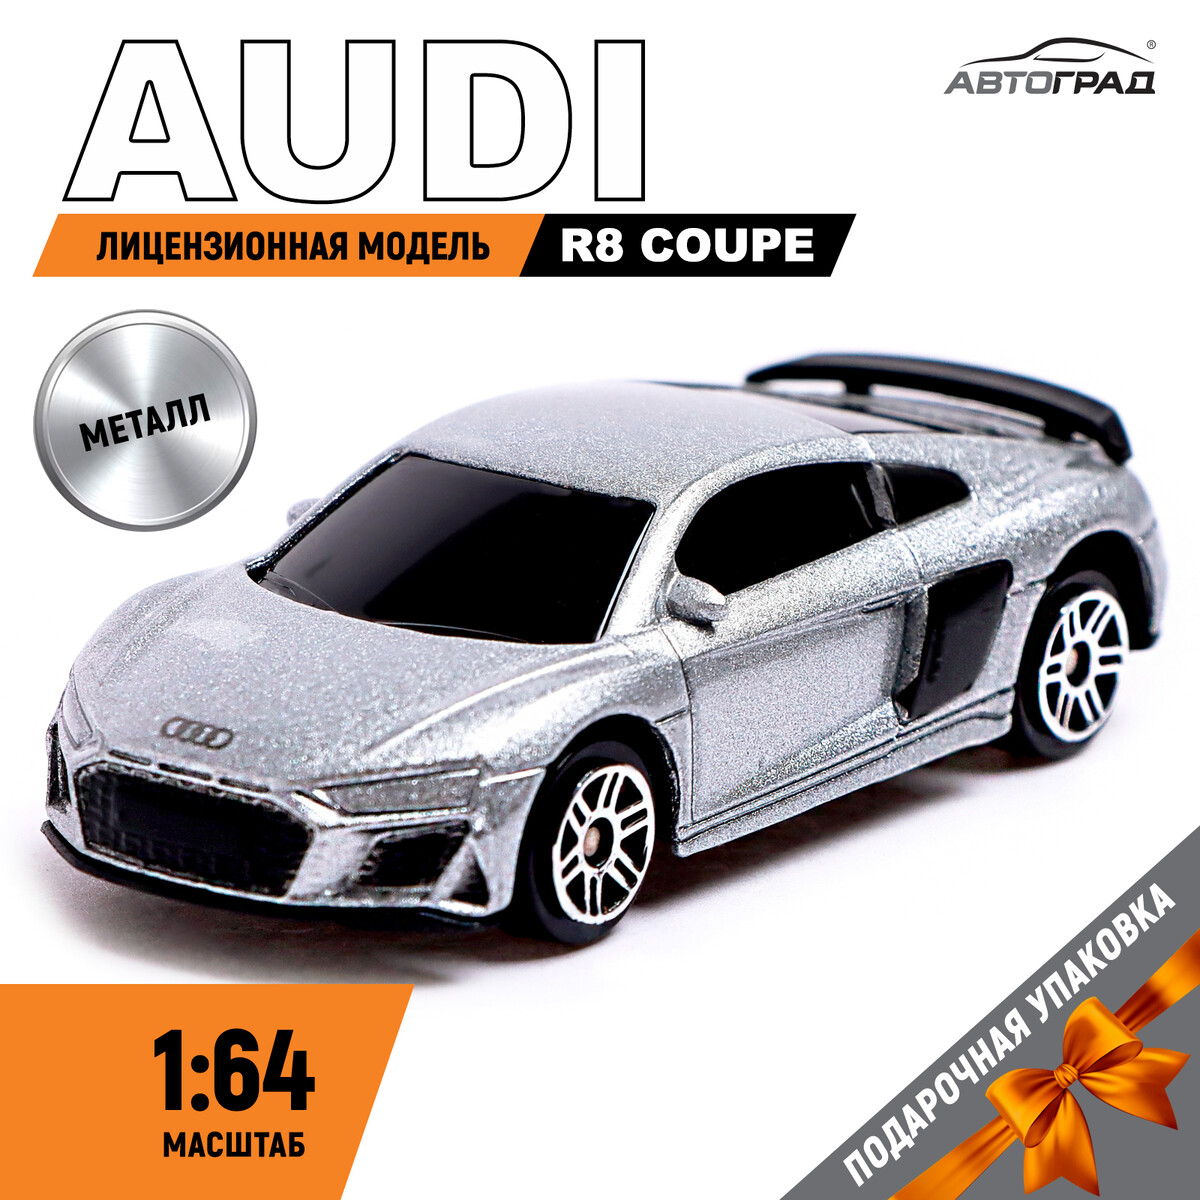 Машина металлическая audi r8 coupe, 1:64, цвет серебро Автоград